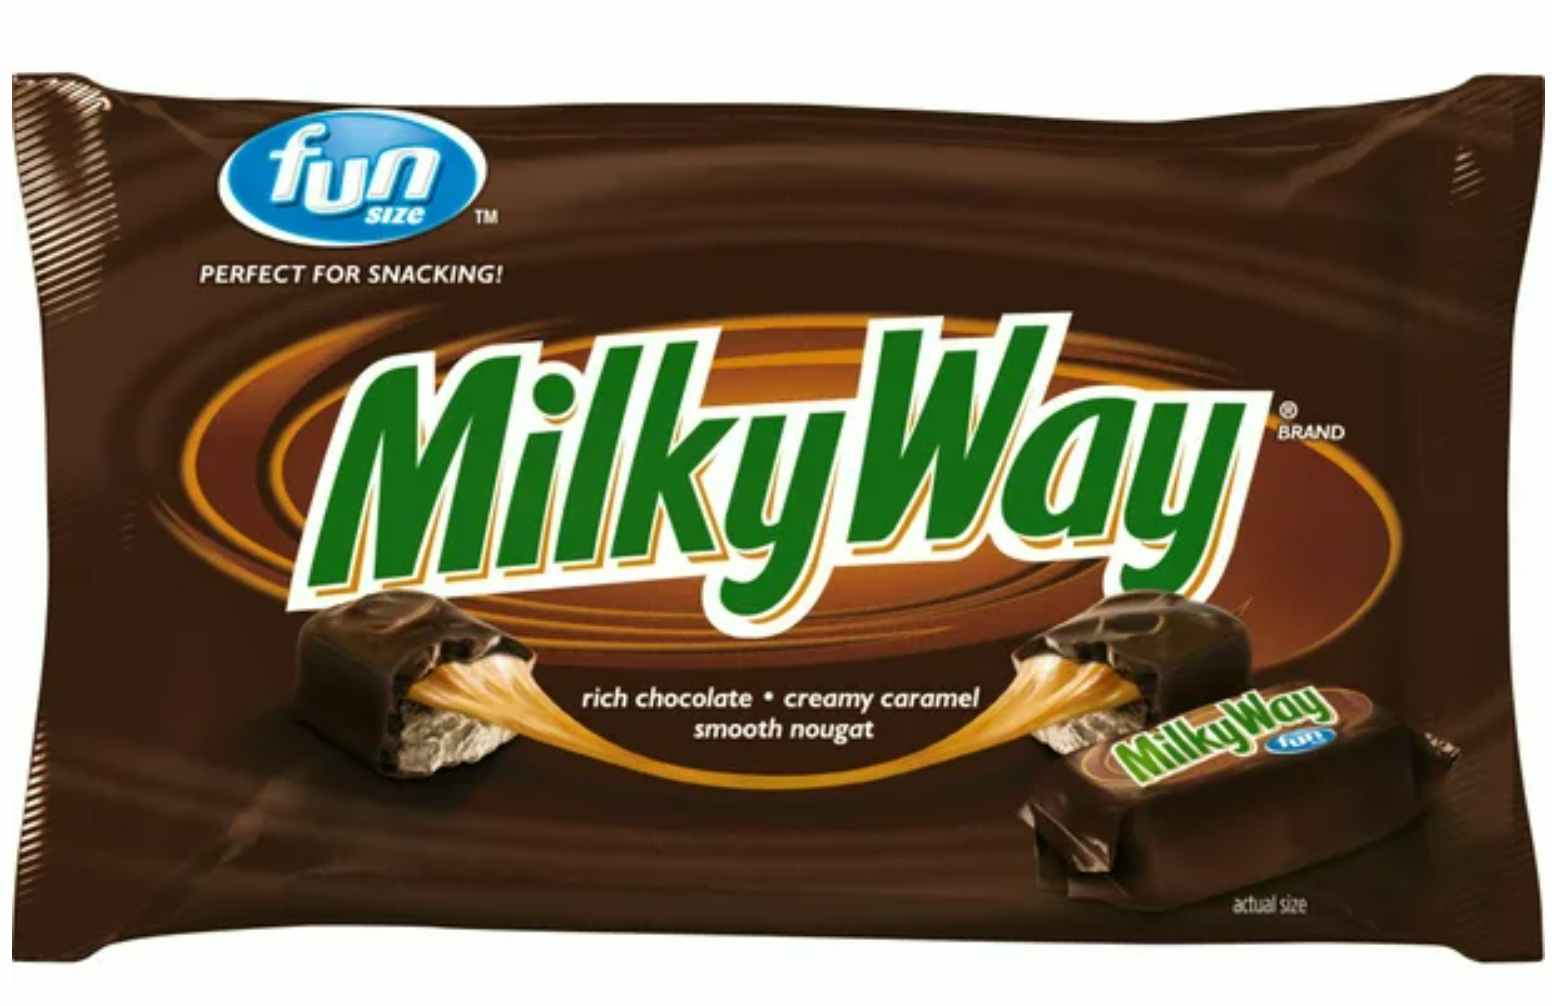 Milky Way fun size candy bar bag